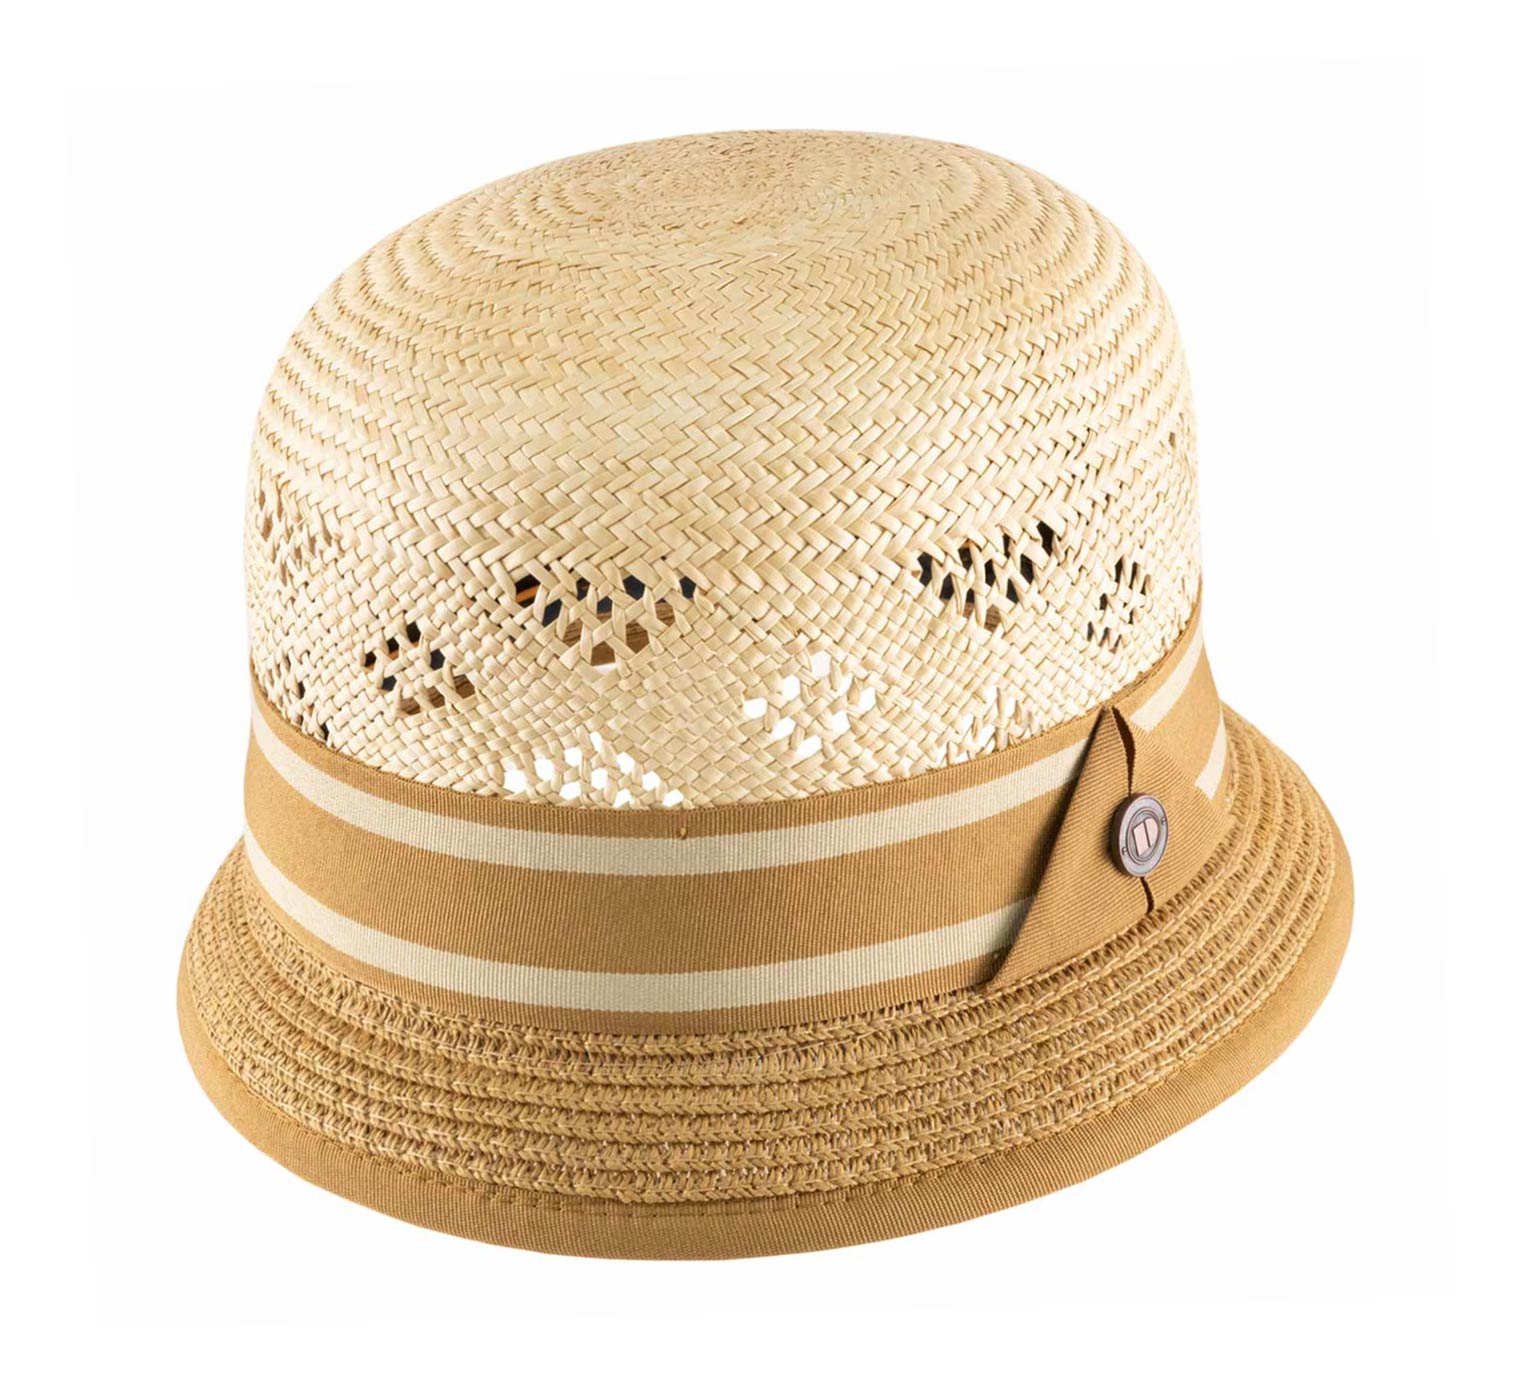 DASMARCA Natural Straw Summer Fedora hat 